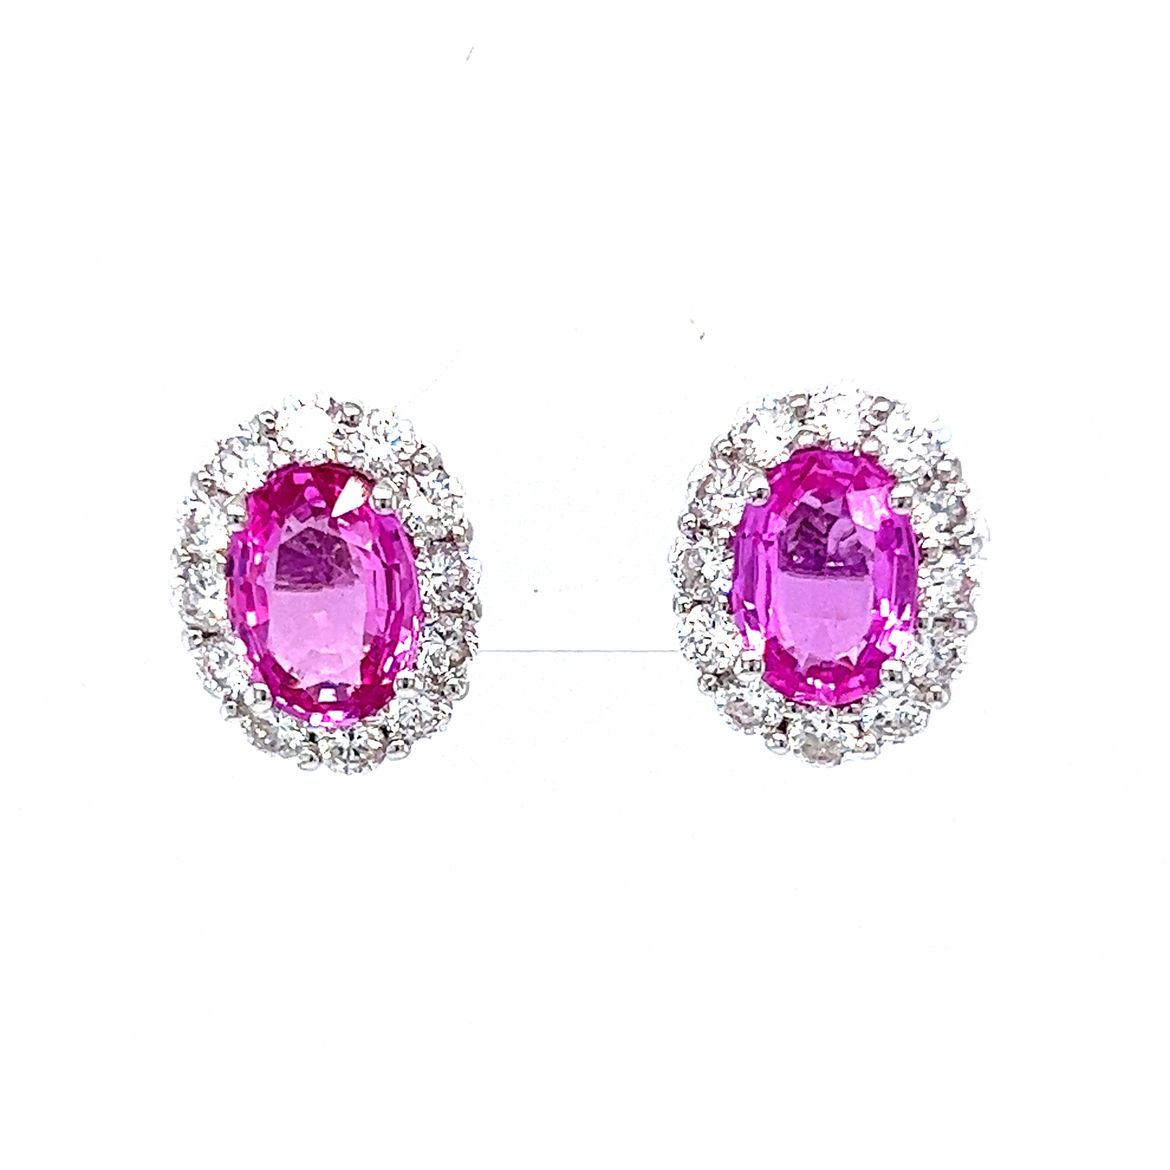 3.60 Oval Cut Pink Sapphire & Diamond Earrings in 18K White Gold